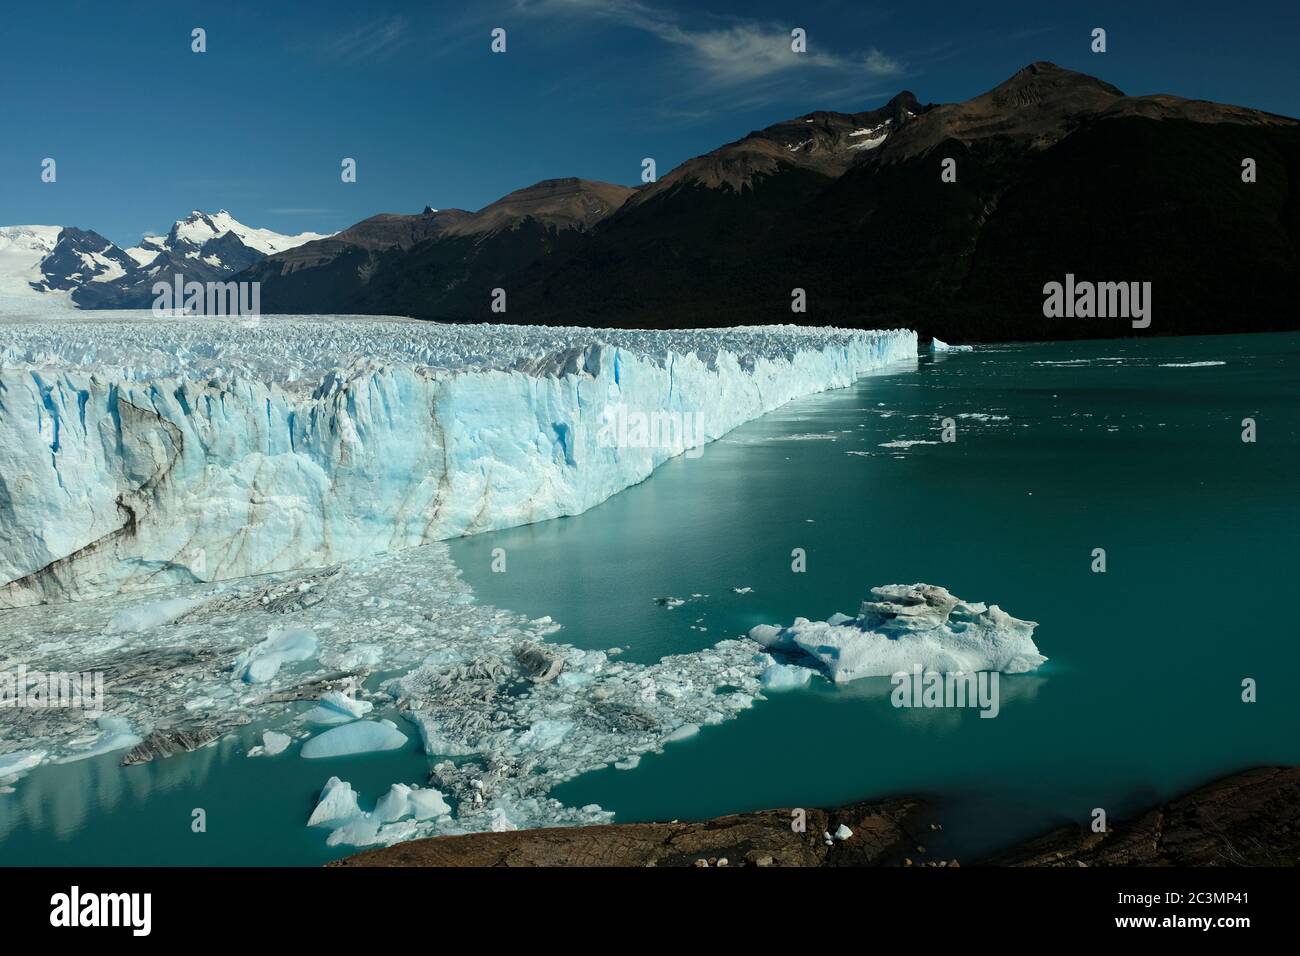 Vue latérale du glacier Perito Moreno situé dans le parc national de Los Glaciares dans la province de Santa Cruz, en Argentine. Banque D'Images